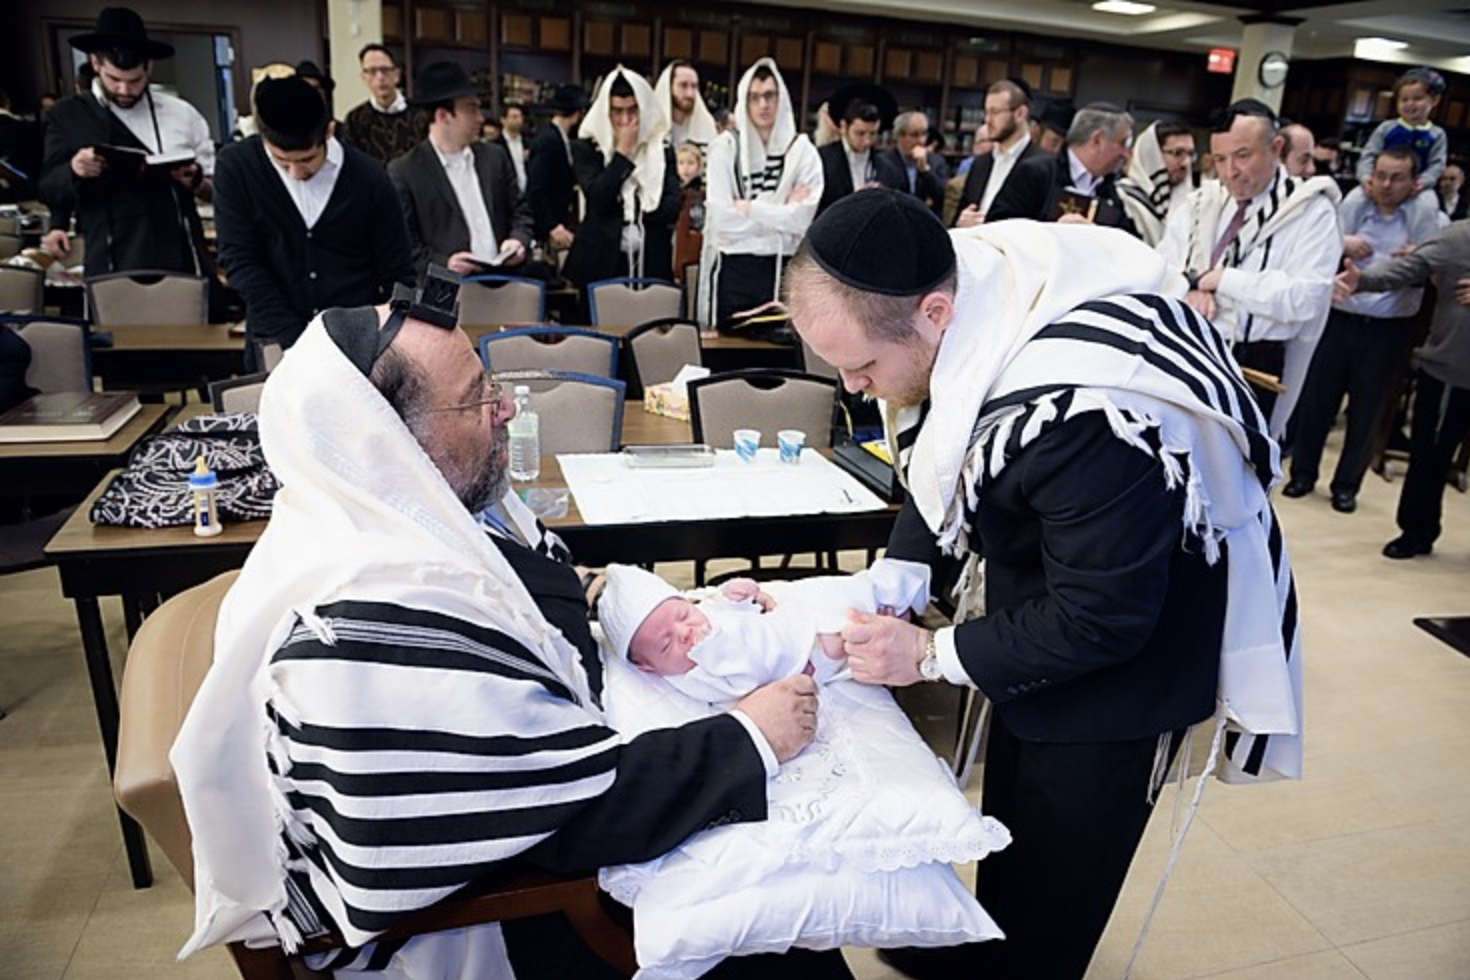 Rabbi Shmuel Katz performing circumcision